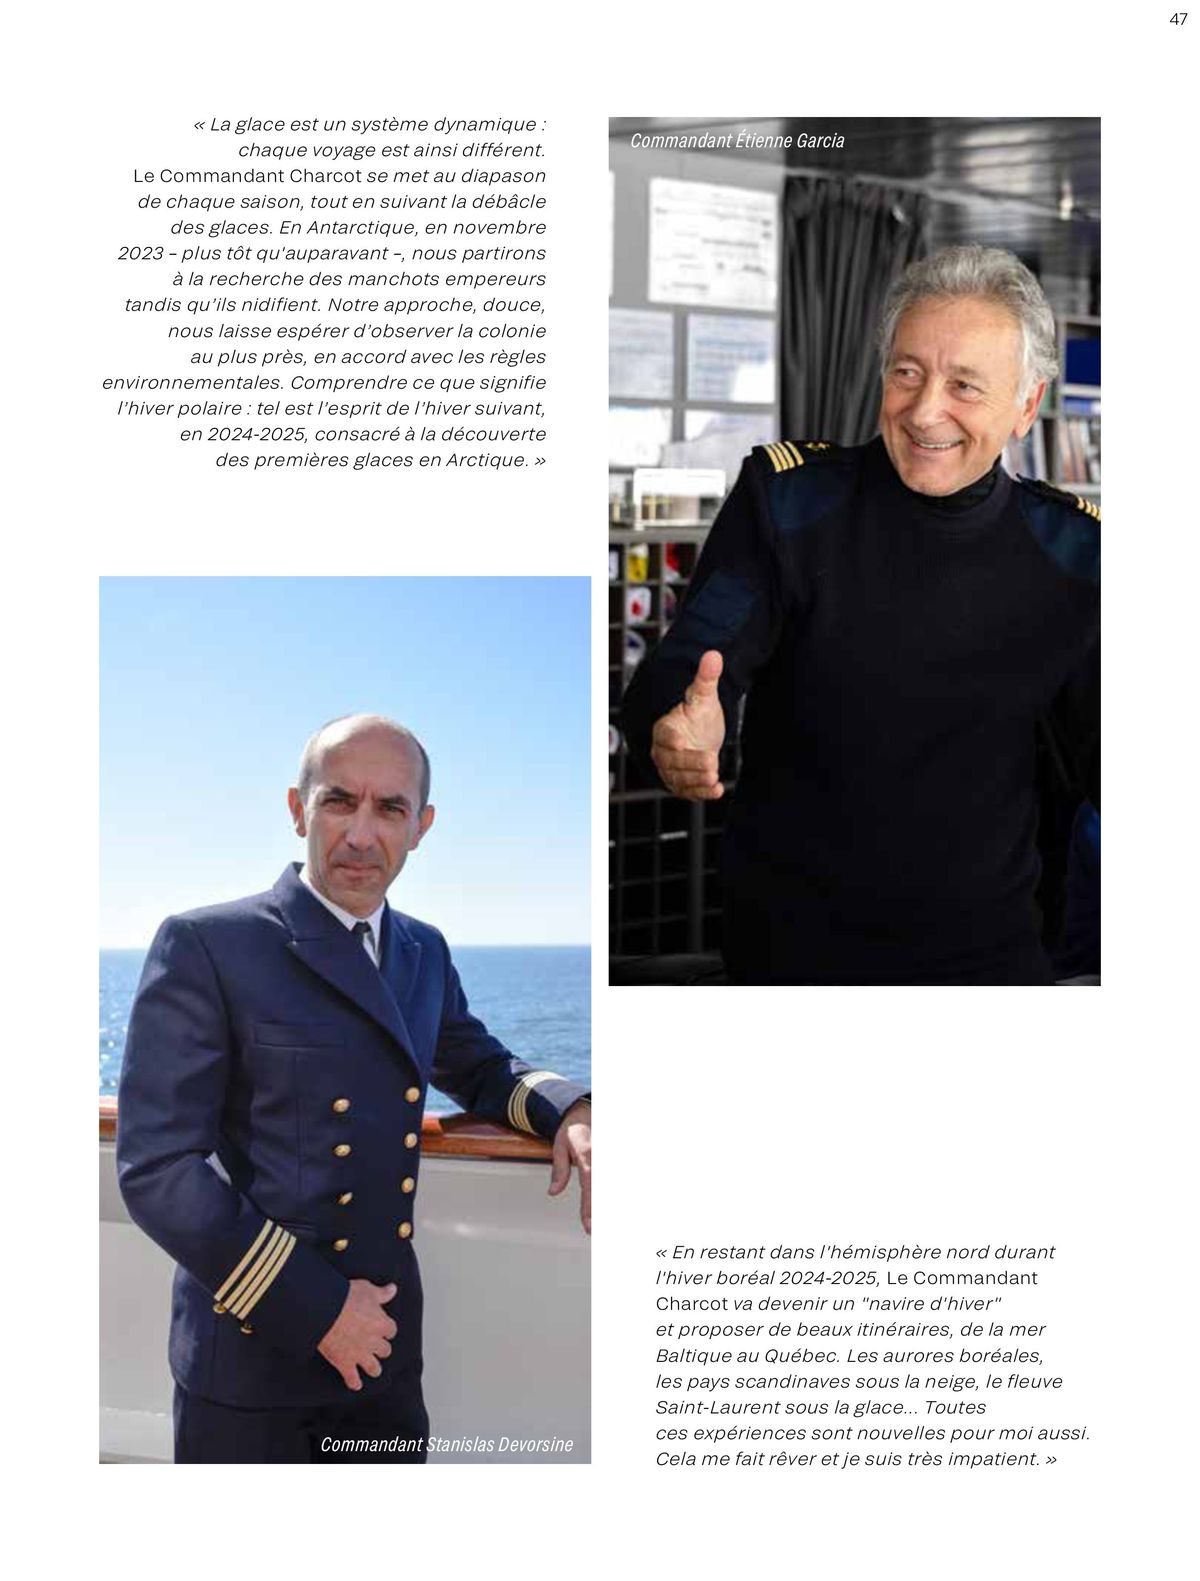 Catalogue Brochure Le Commandant Charcot 2023-2025, page 00047